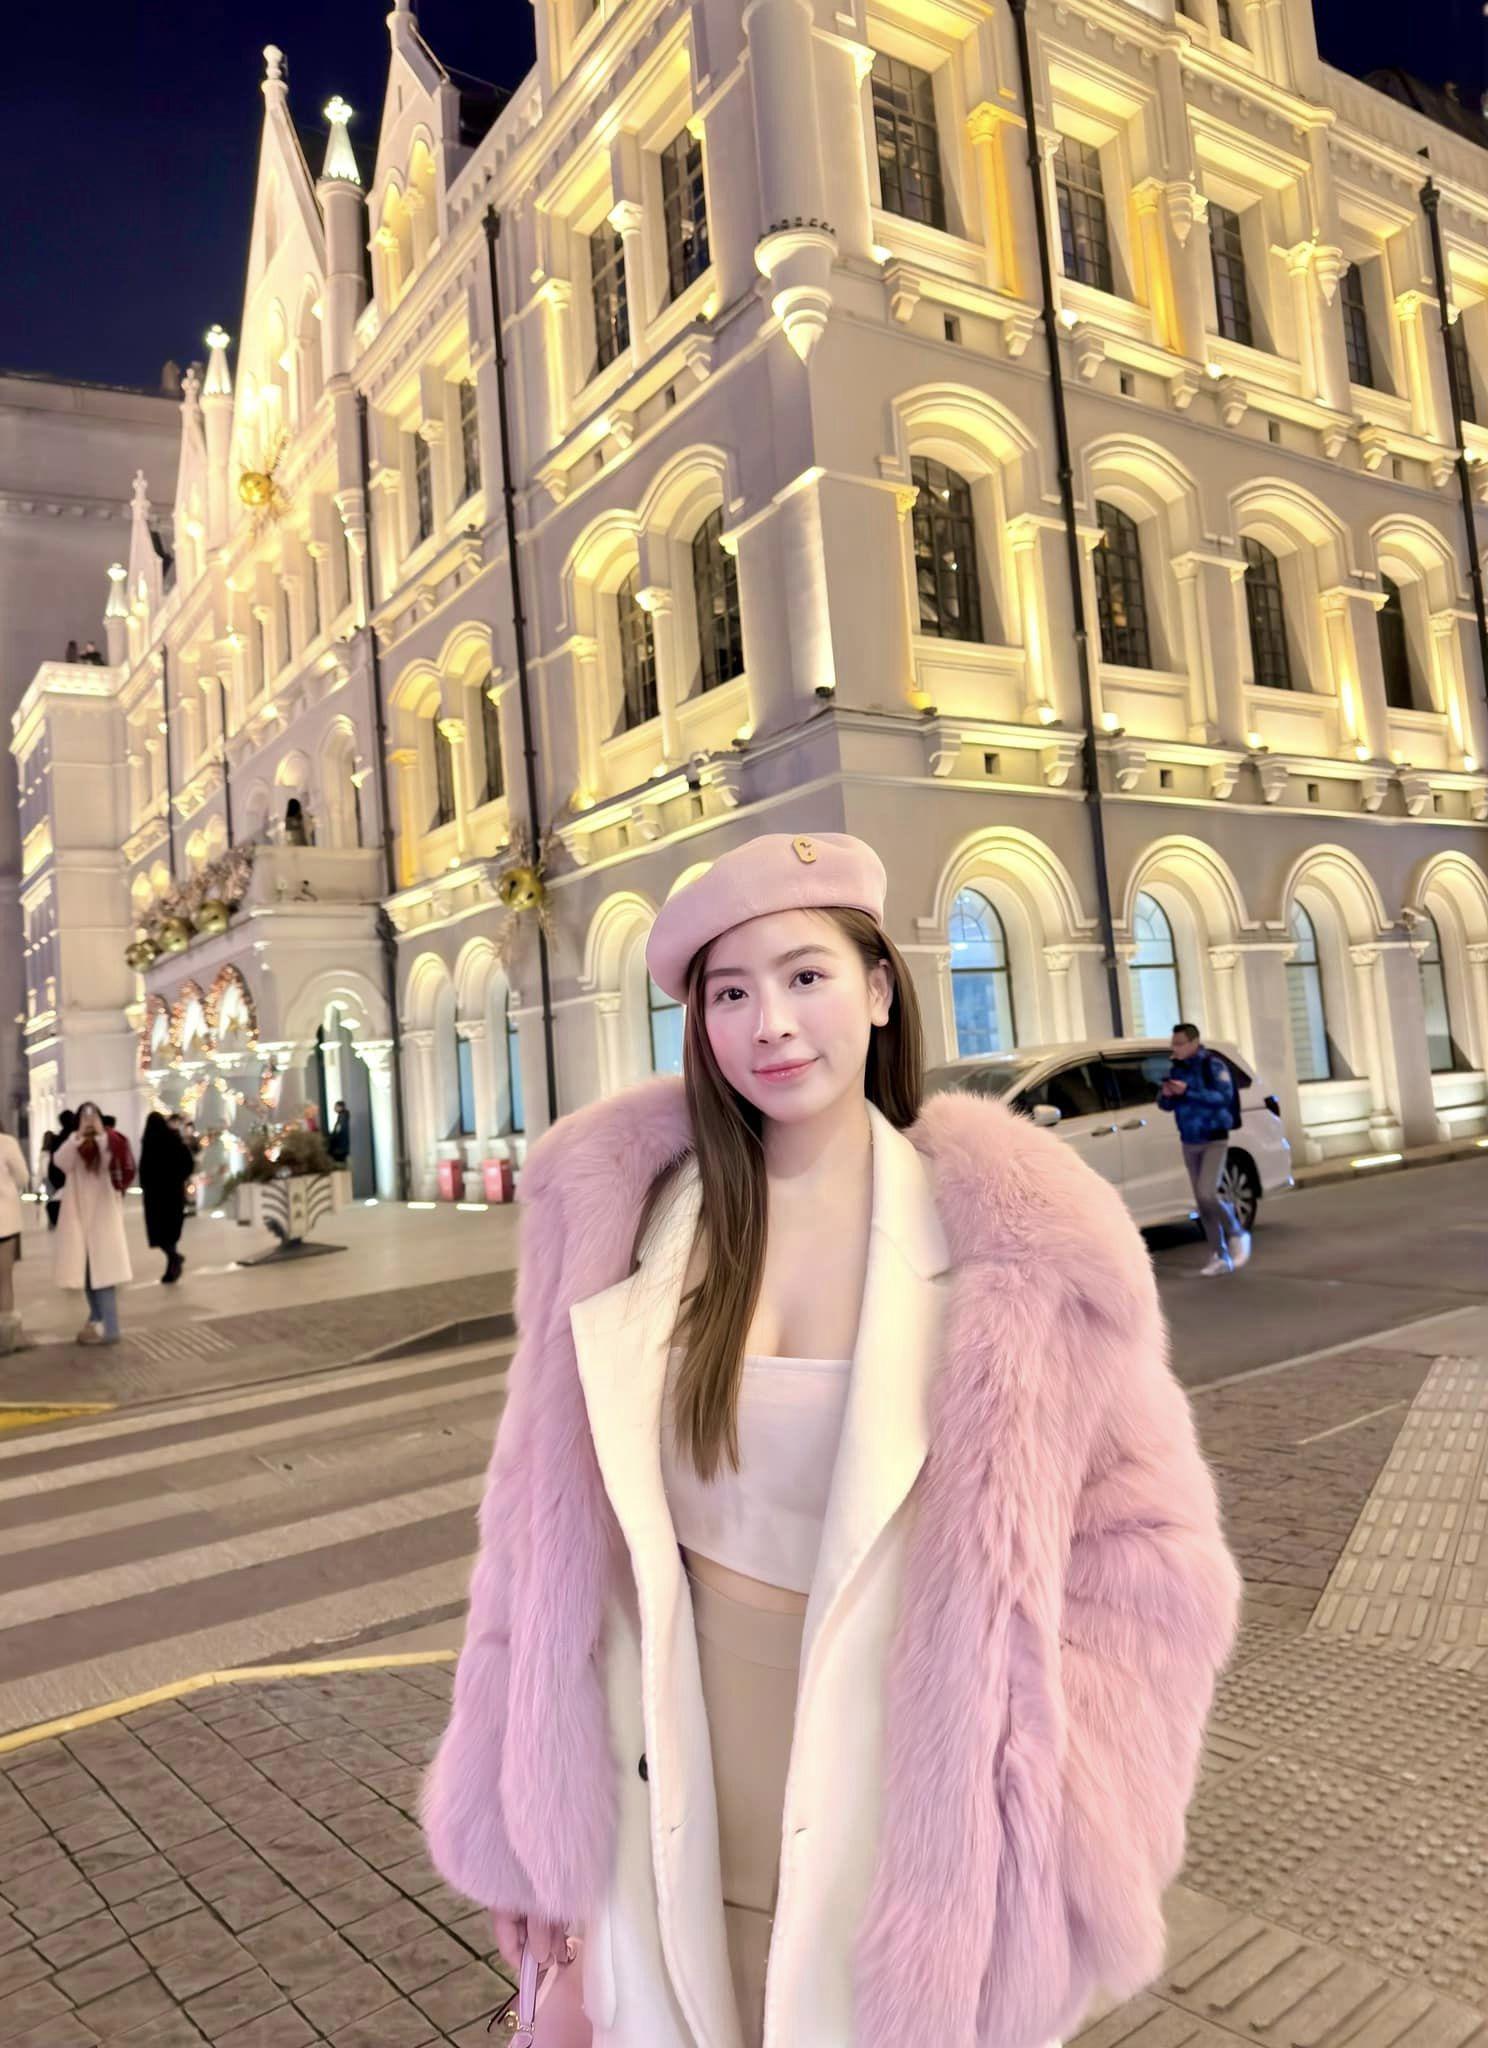 Trong chuyến du lịch Thượng Hải (Trung Quốc) vào tháng 12 vừa qua, mỹ nhân Hà Thành nổi bật trên đường phố với set đồ tông trắng - hồng, ôm sát thân hình. Vì thời tiết lạnh nên cô diện thêm áo khoác lông bên ngoài, kết hợp cùng mũ len. 